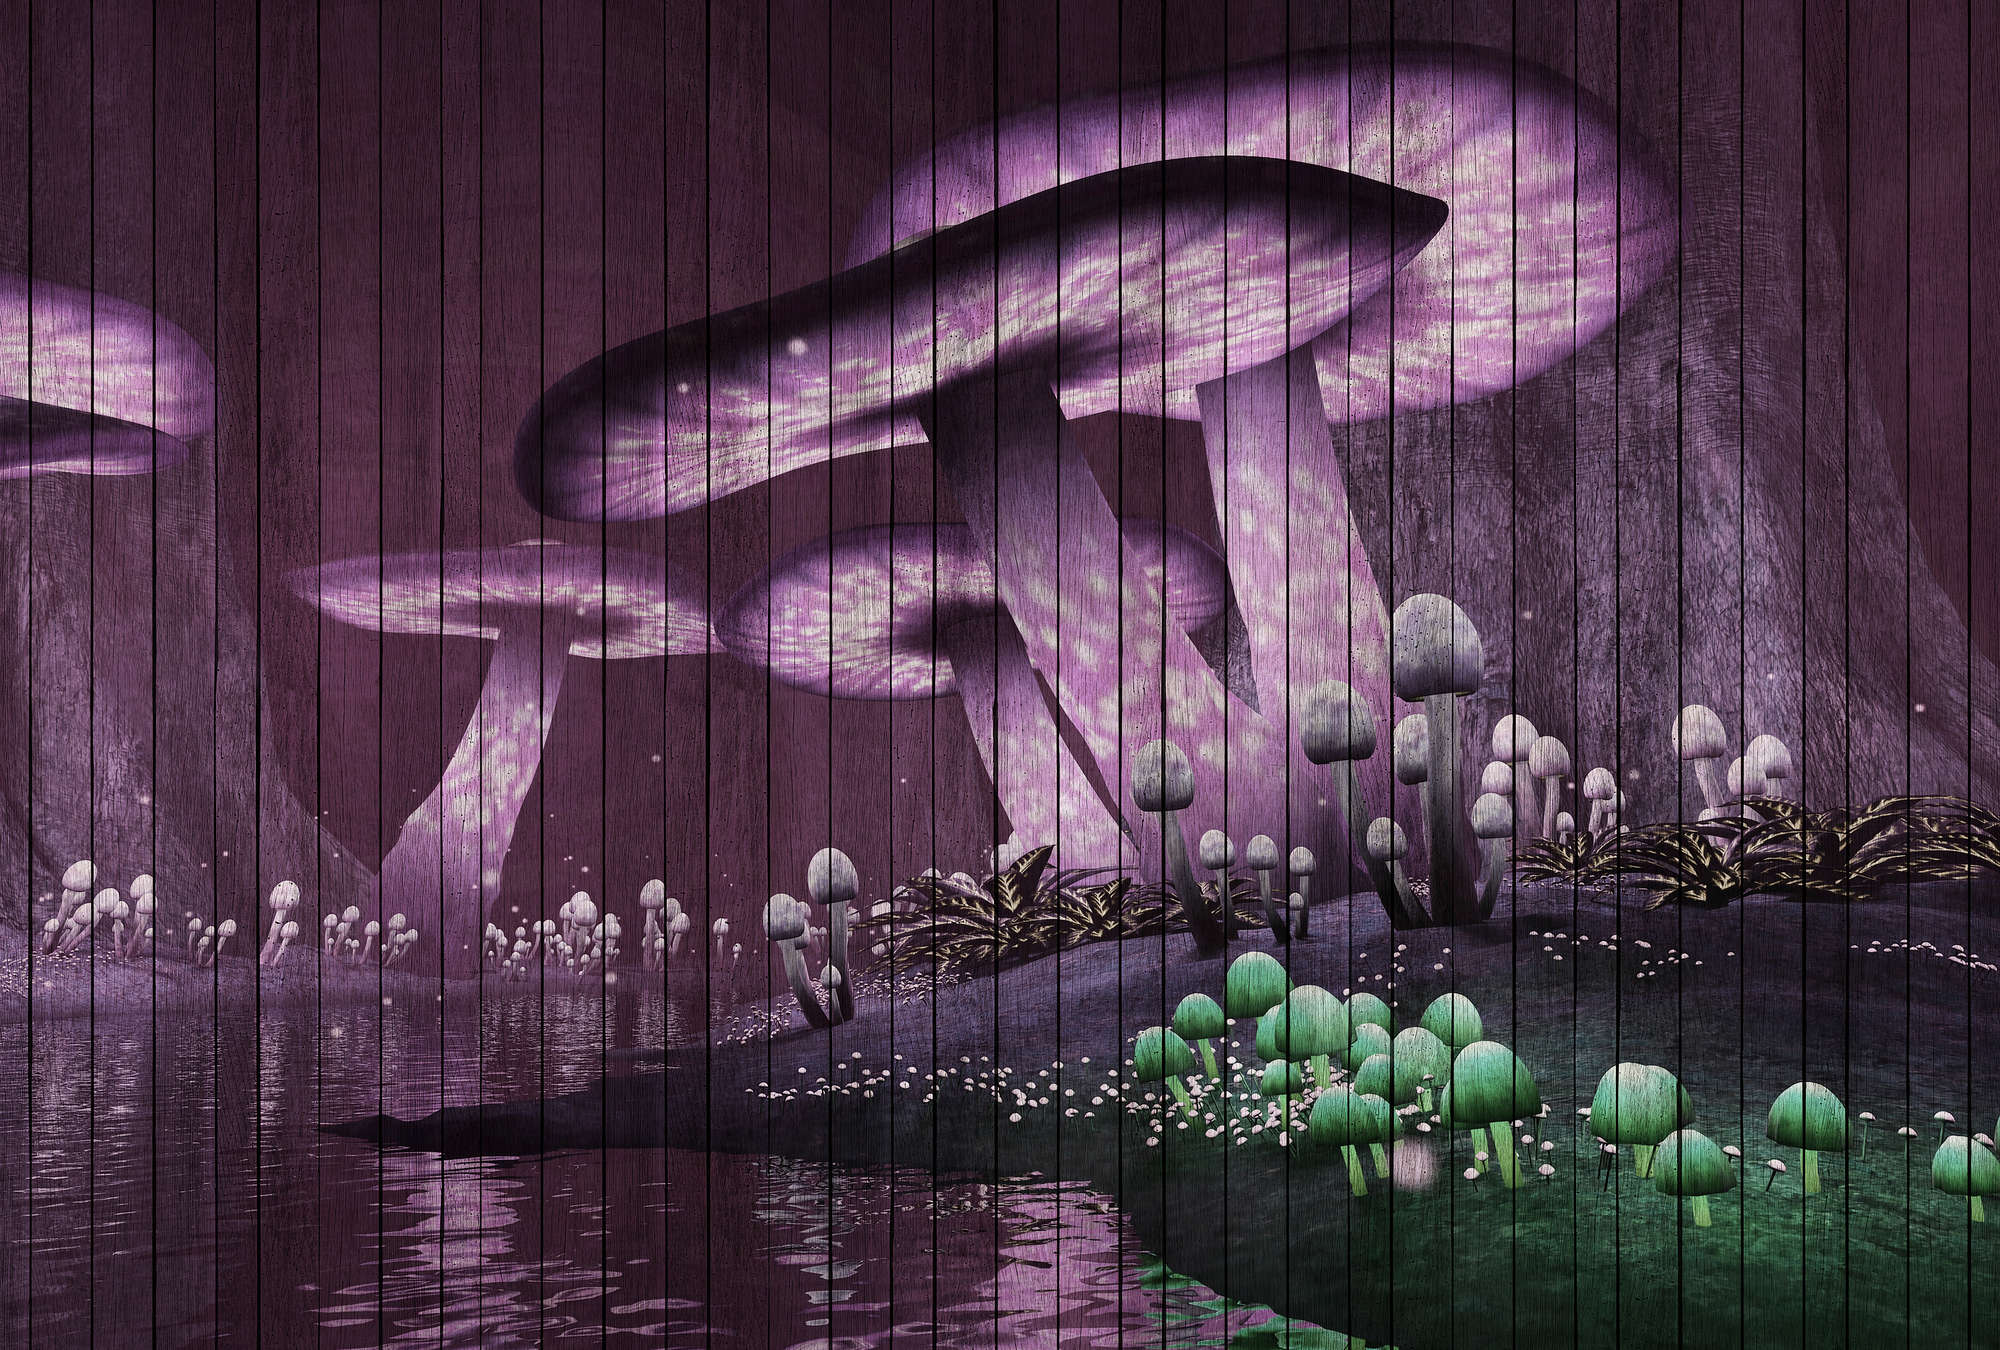             Fantasy 2 - Fototapete magischer Wald mit Holzpaneele Struktur – Grün, Violett | Premium Glattvlies
        